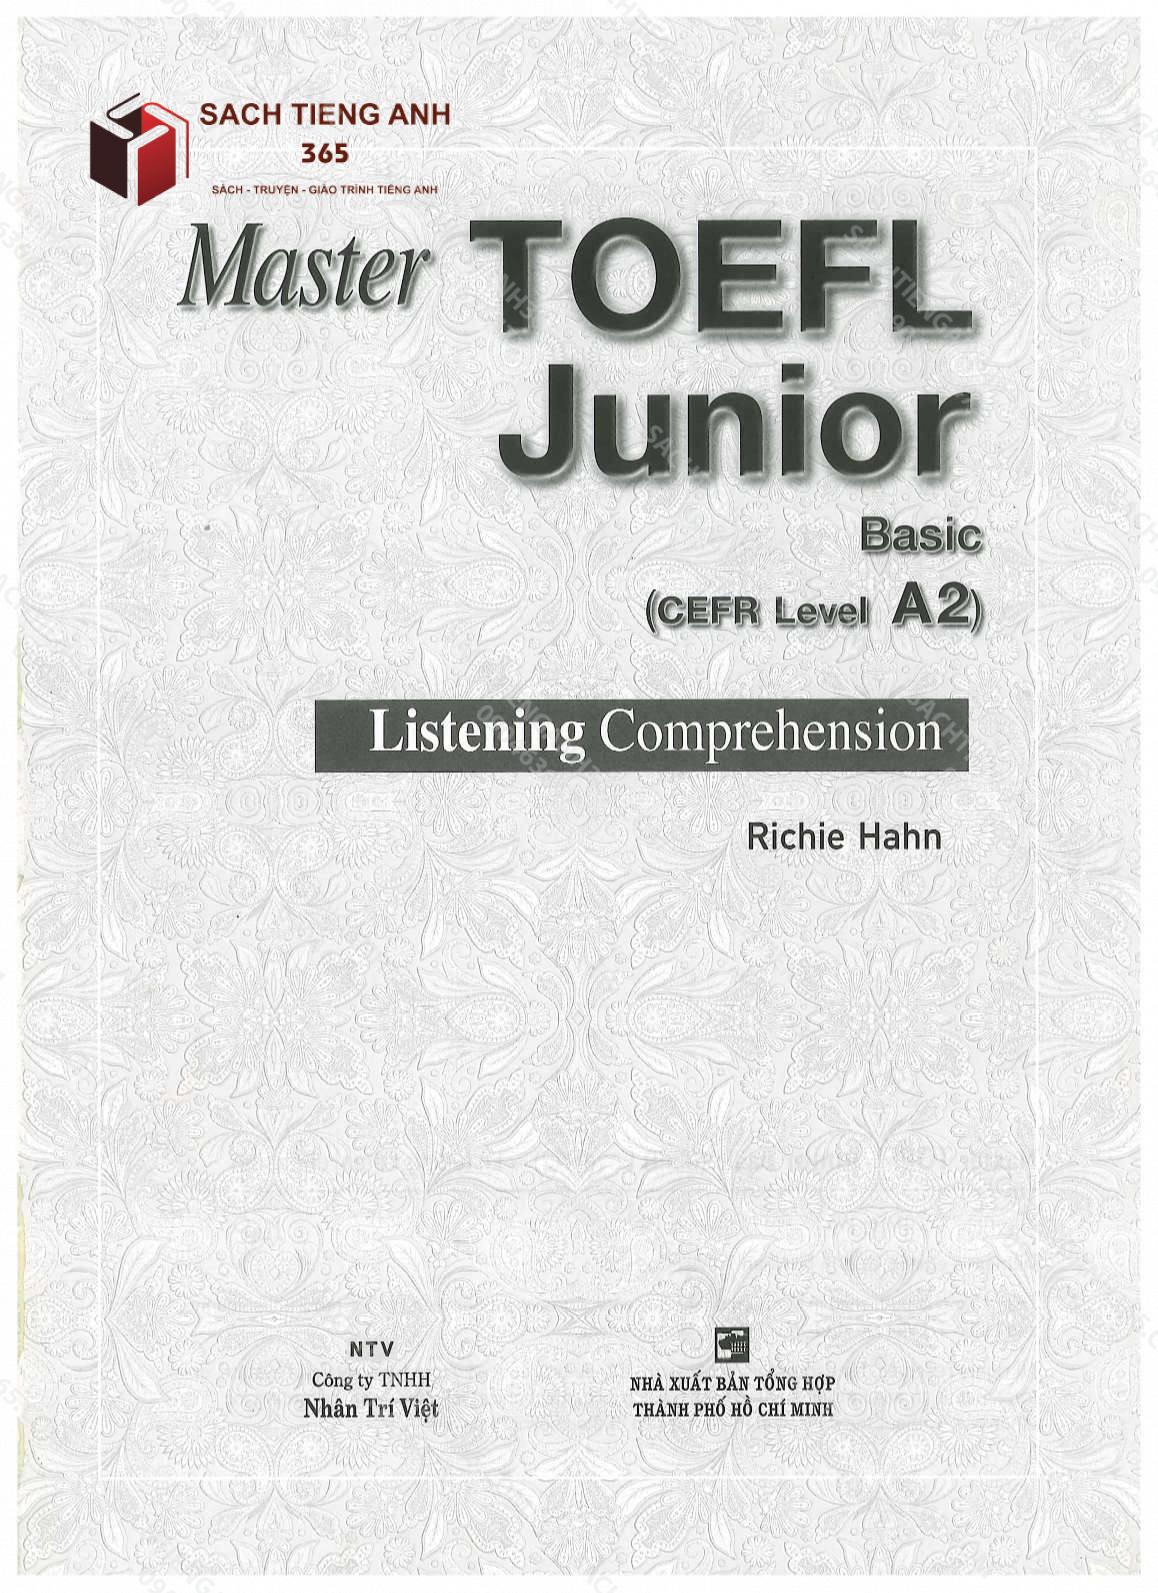 toefl junior_basic_listening_001